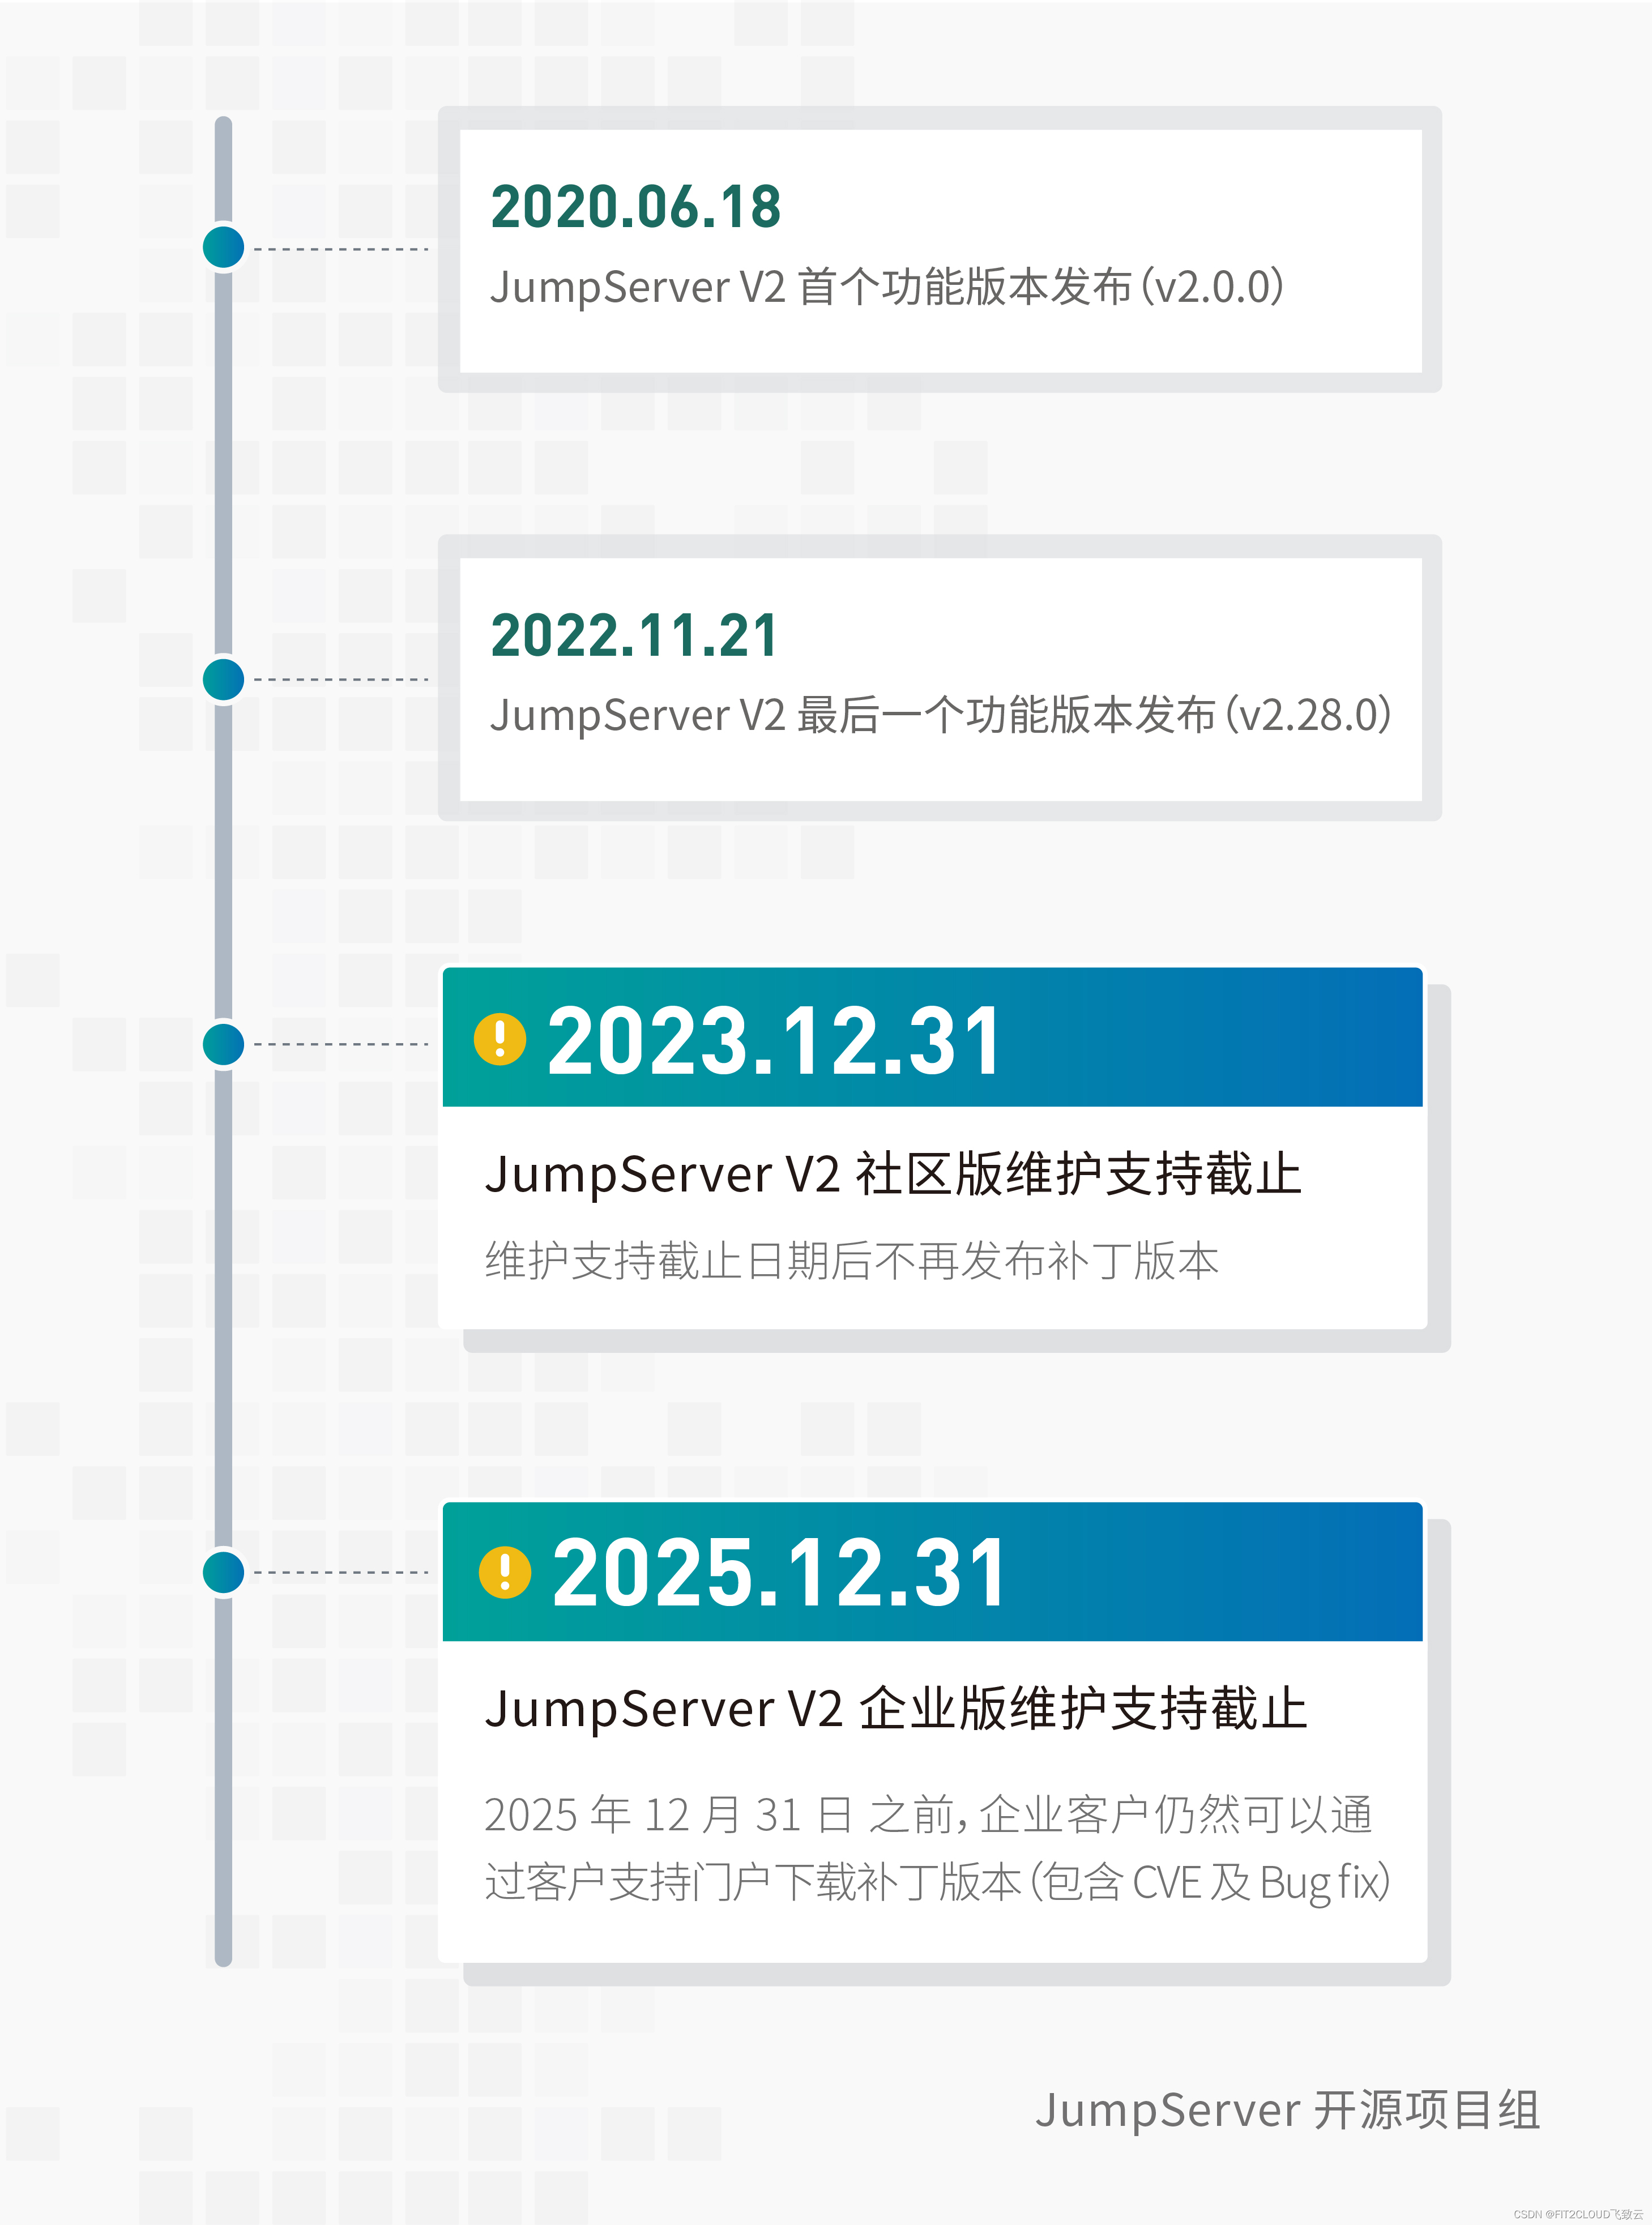 重要通知｜关于JumpServer开源堡垒机V2版本产品生命周期的相关说明